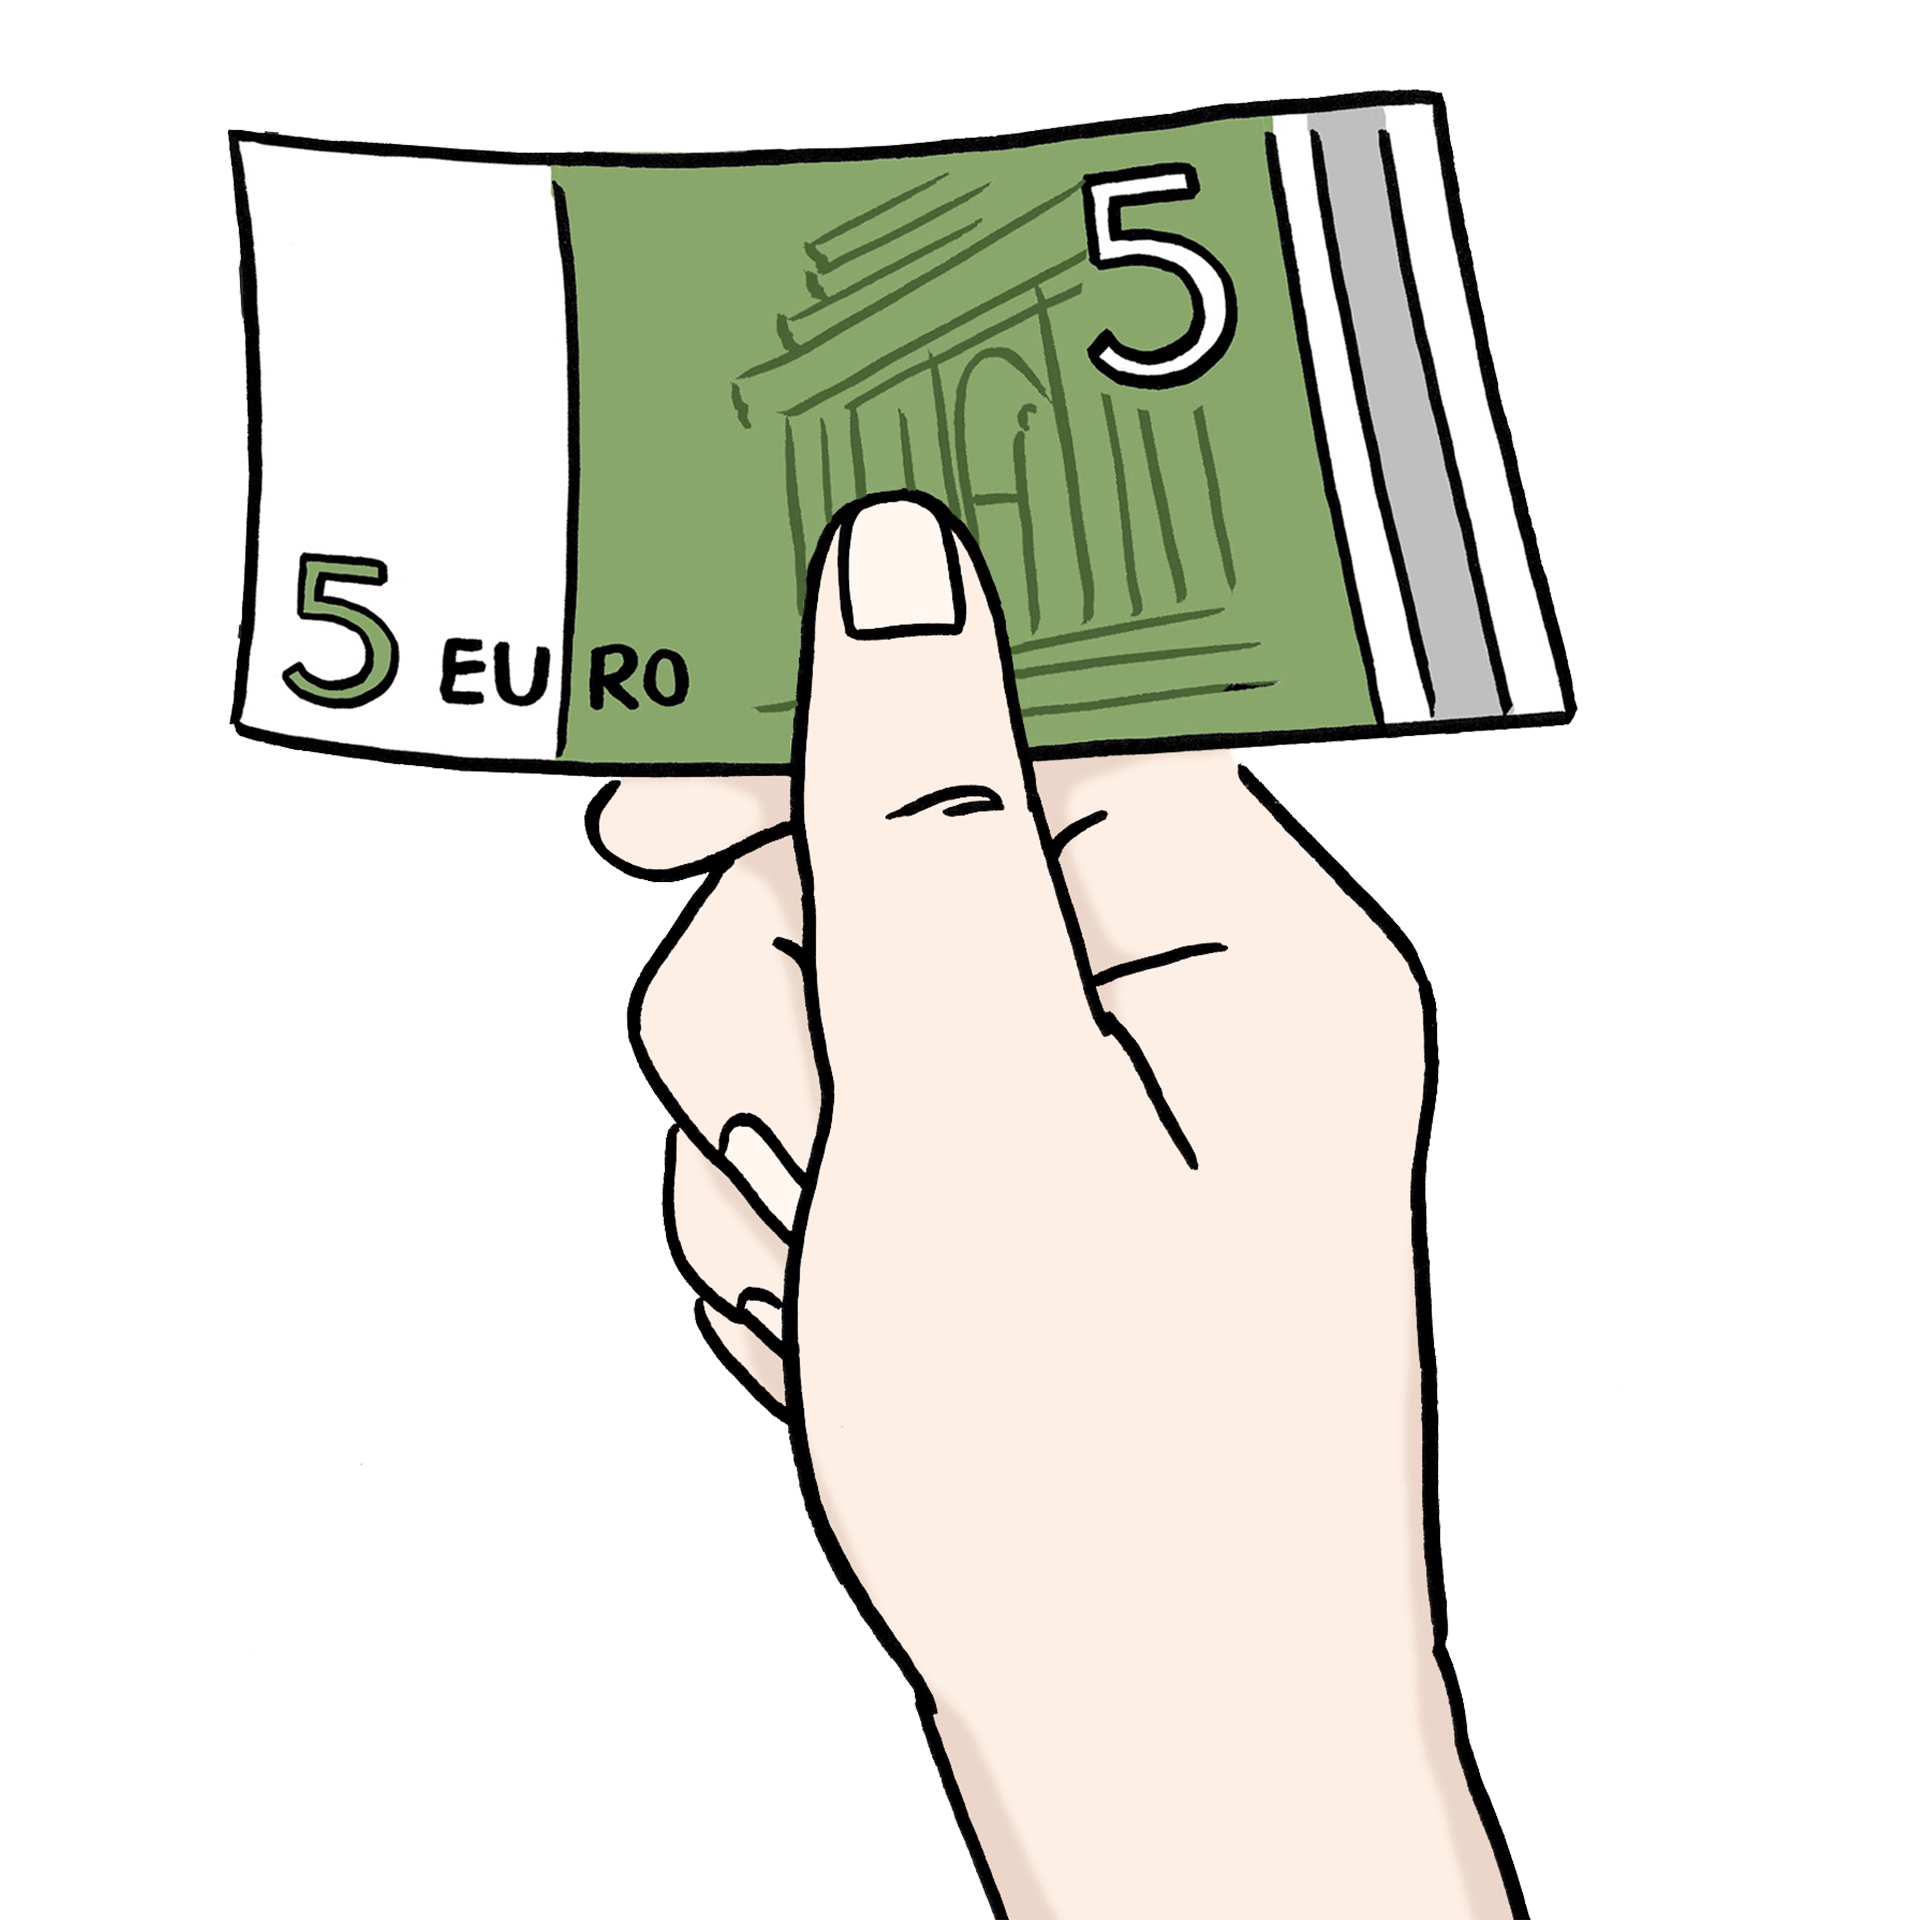 Bild zeigt eine Hand mit einem Geld-Schein